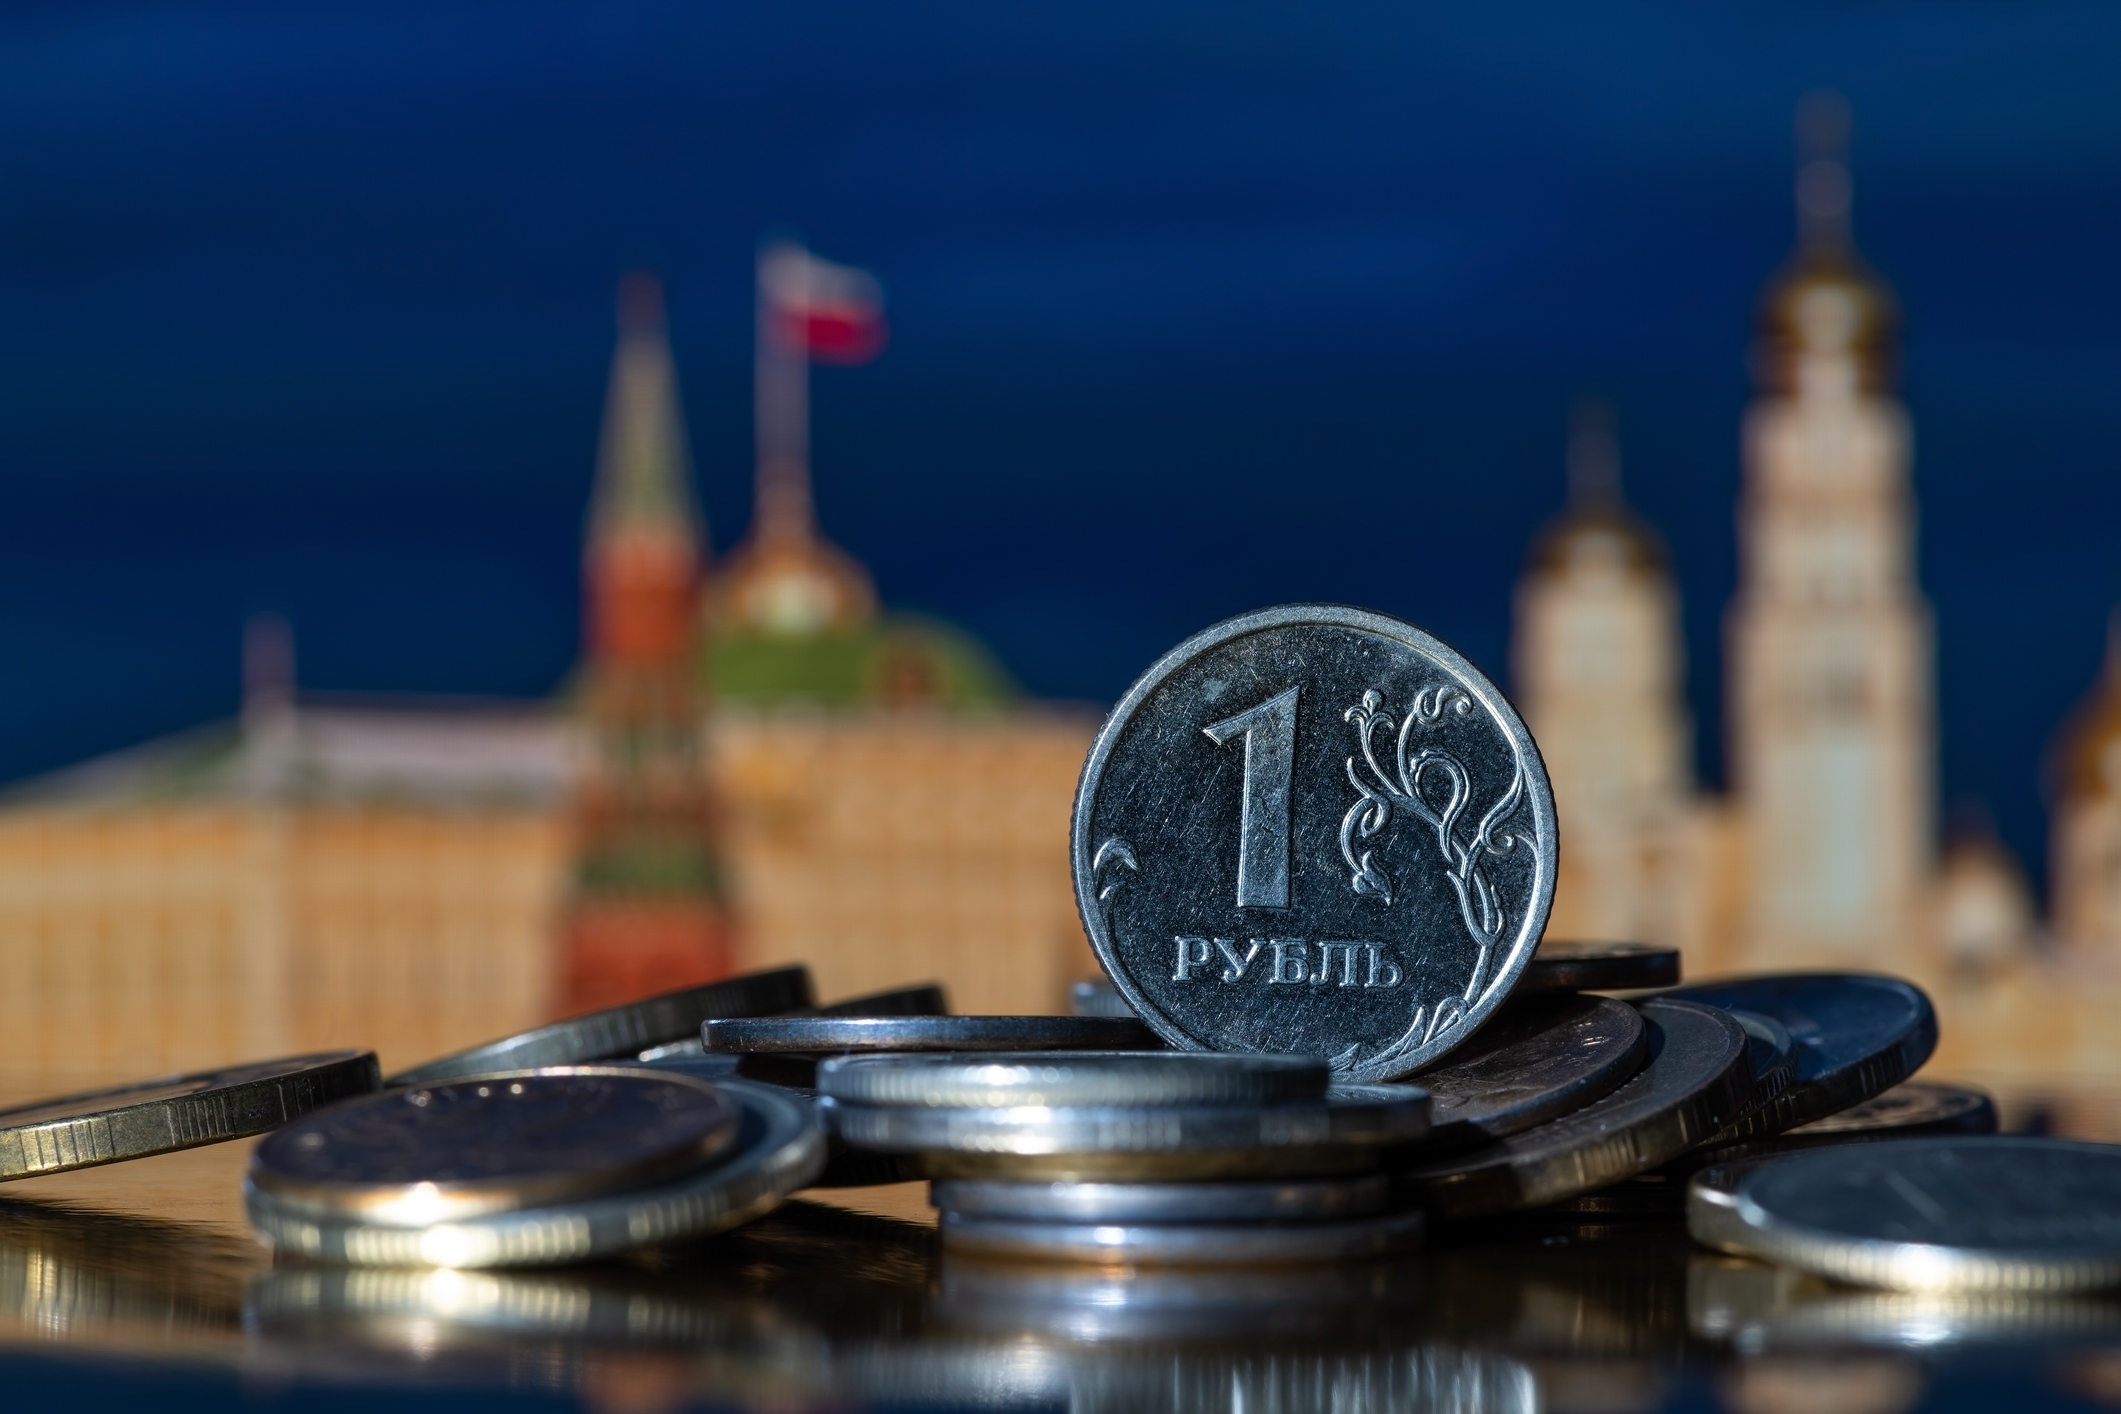 Banco Central da Federação Russa vincula rublo ao ouro